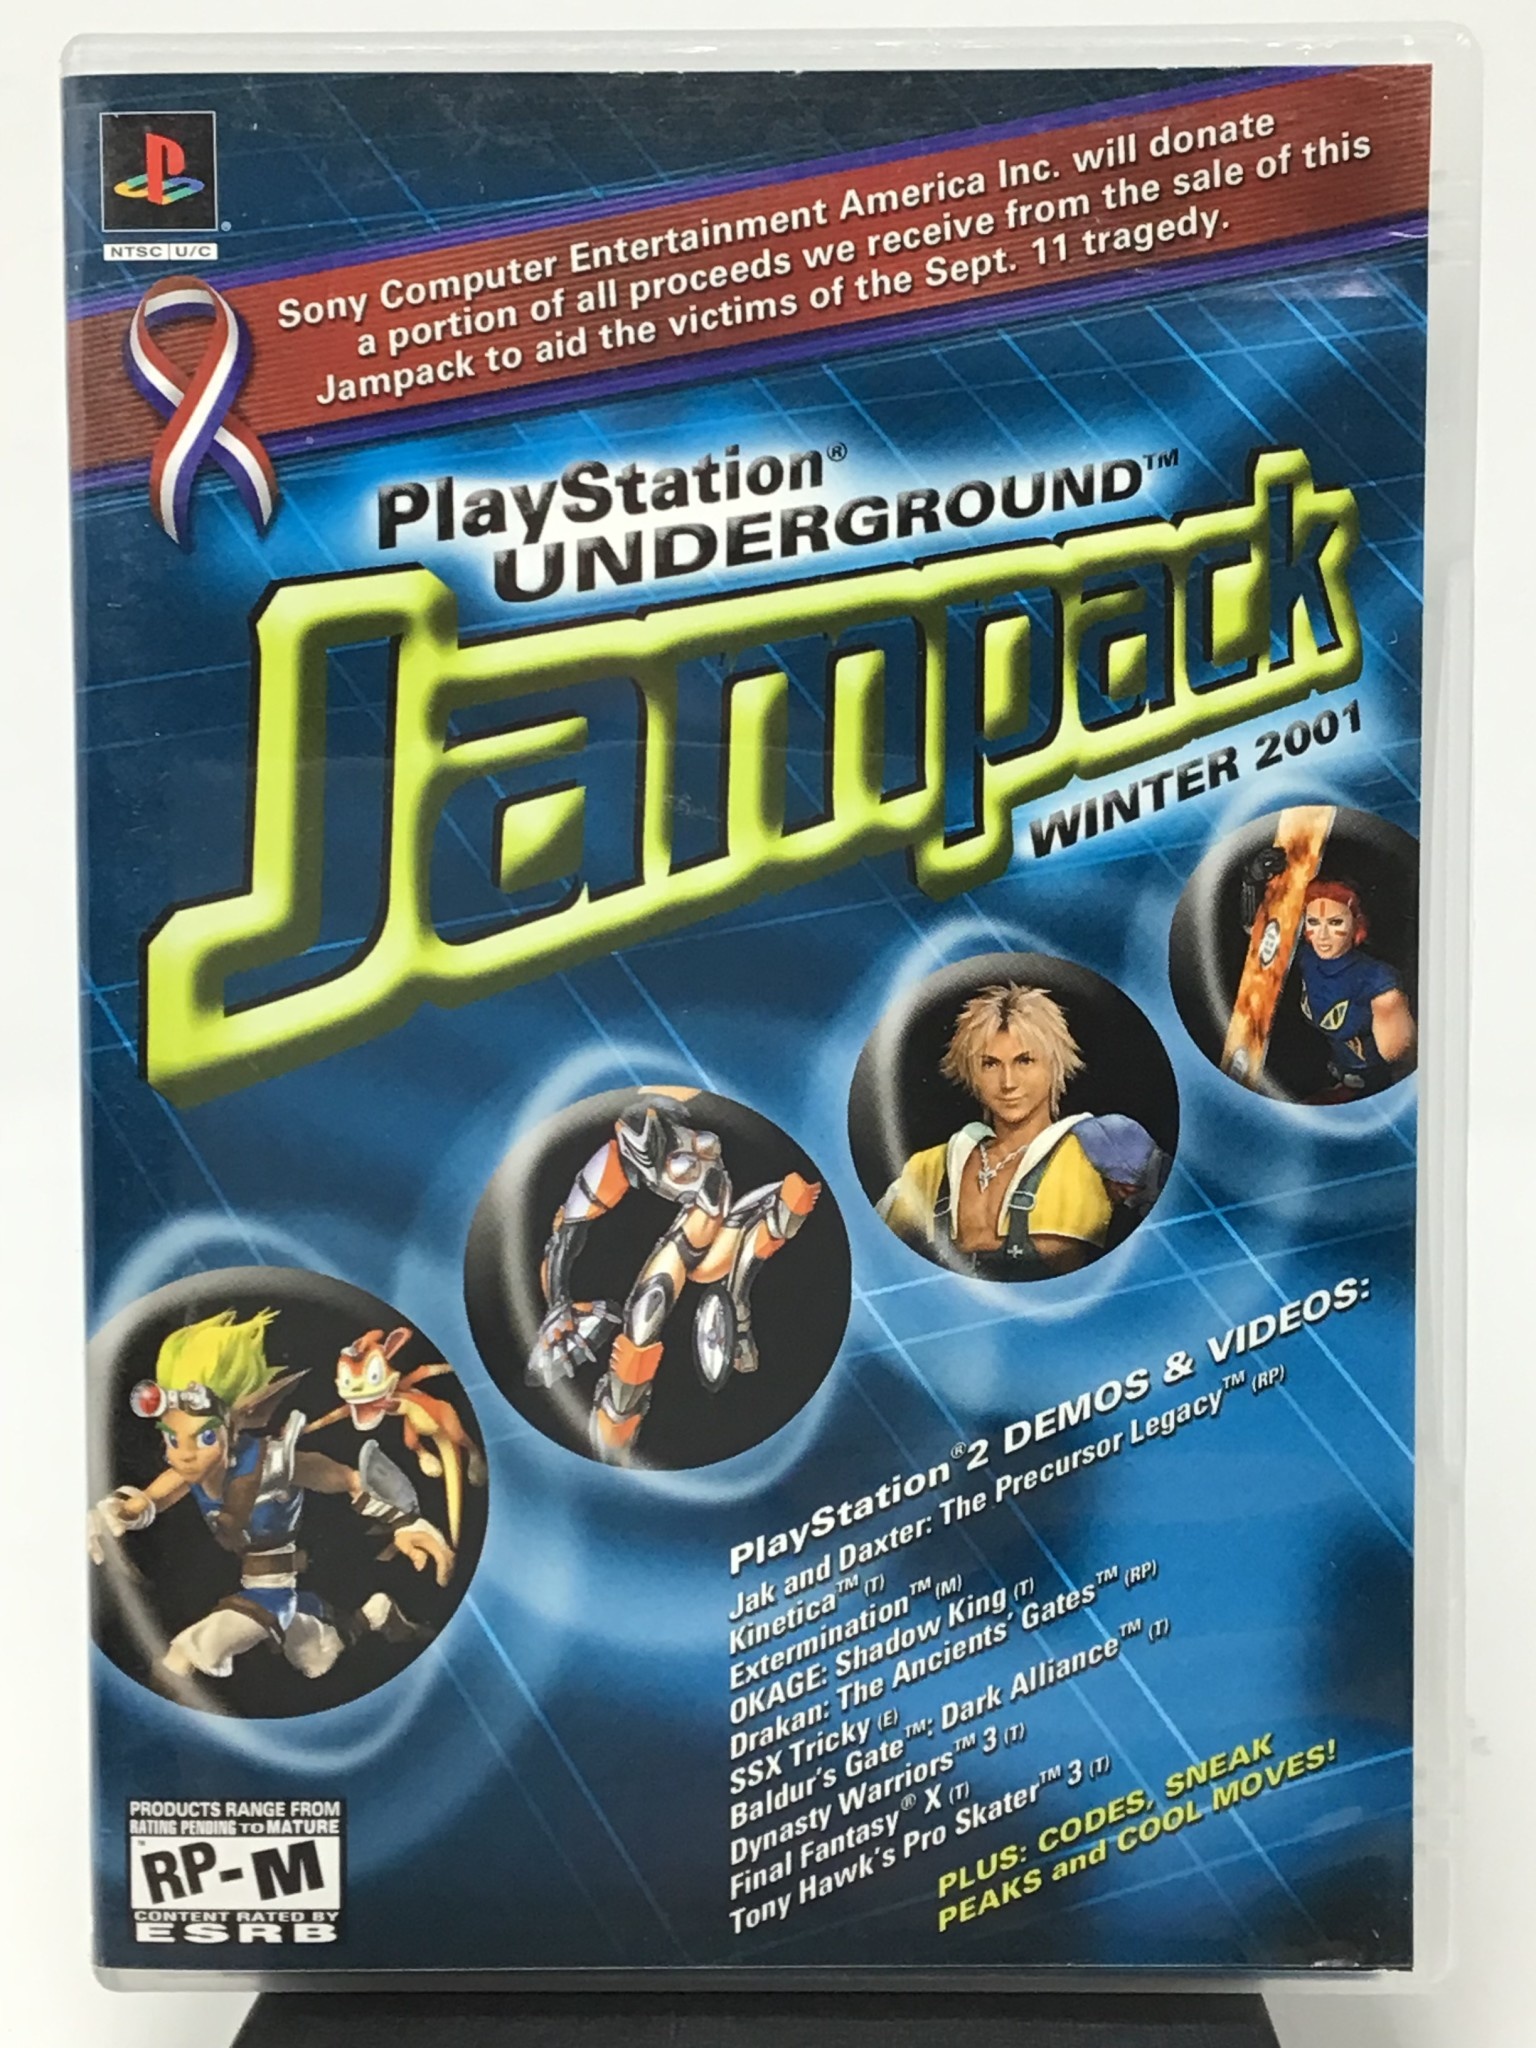 tilbagemeldinger døråbning opkald Playstation Underground Jampack (PS2 w/ MANUAL( - Cape Fear Games